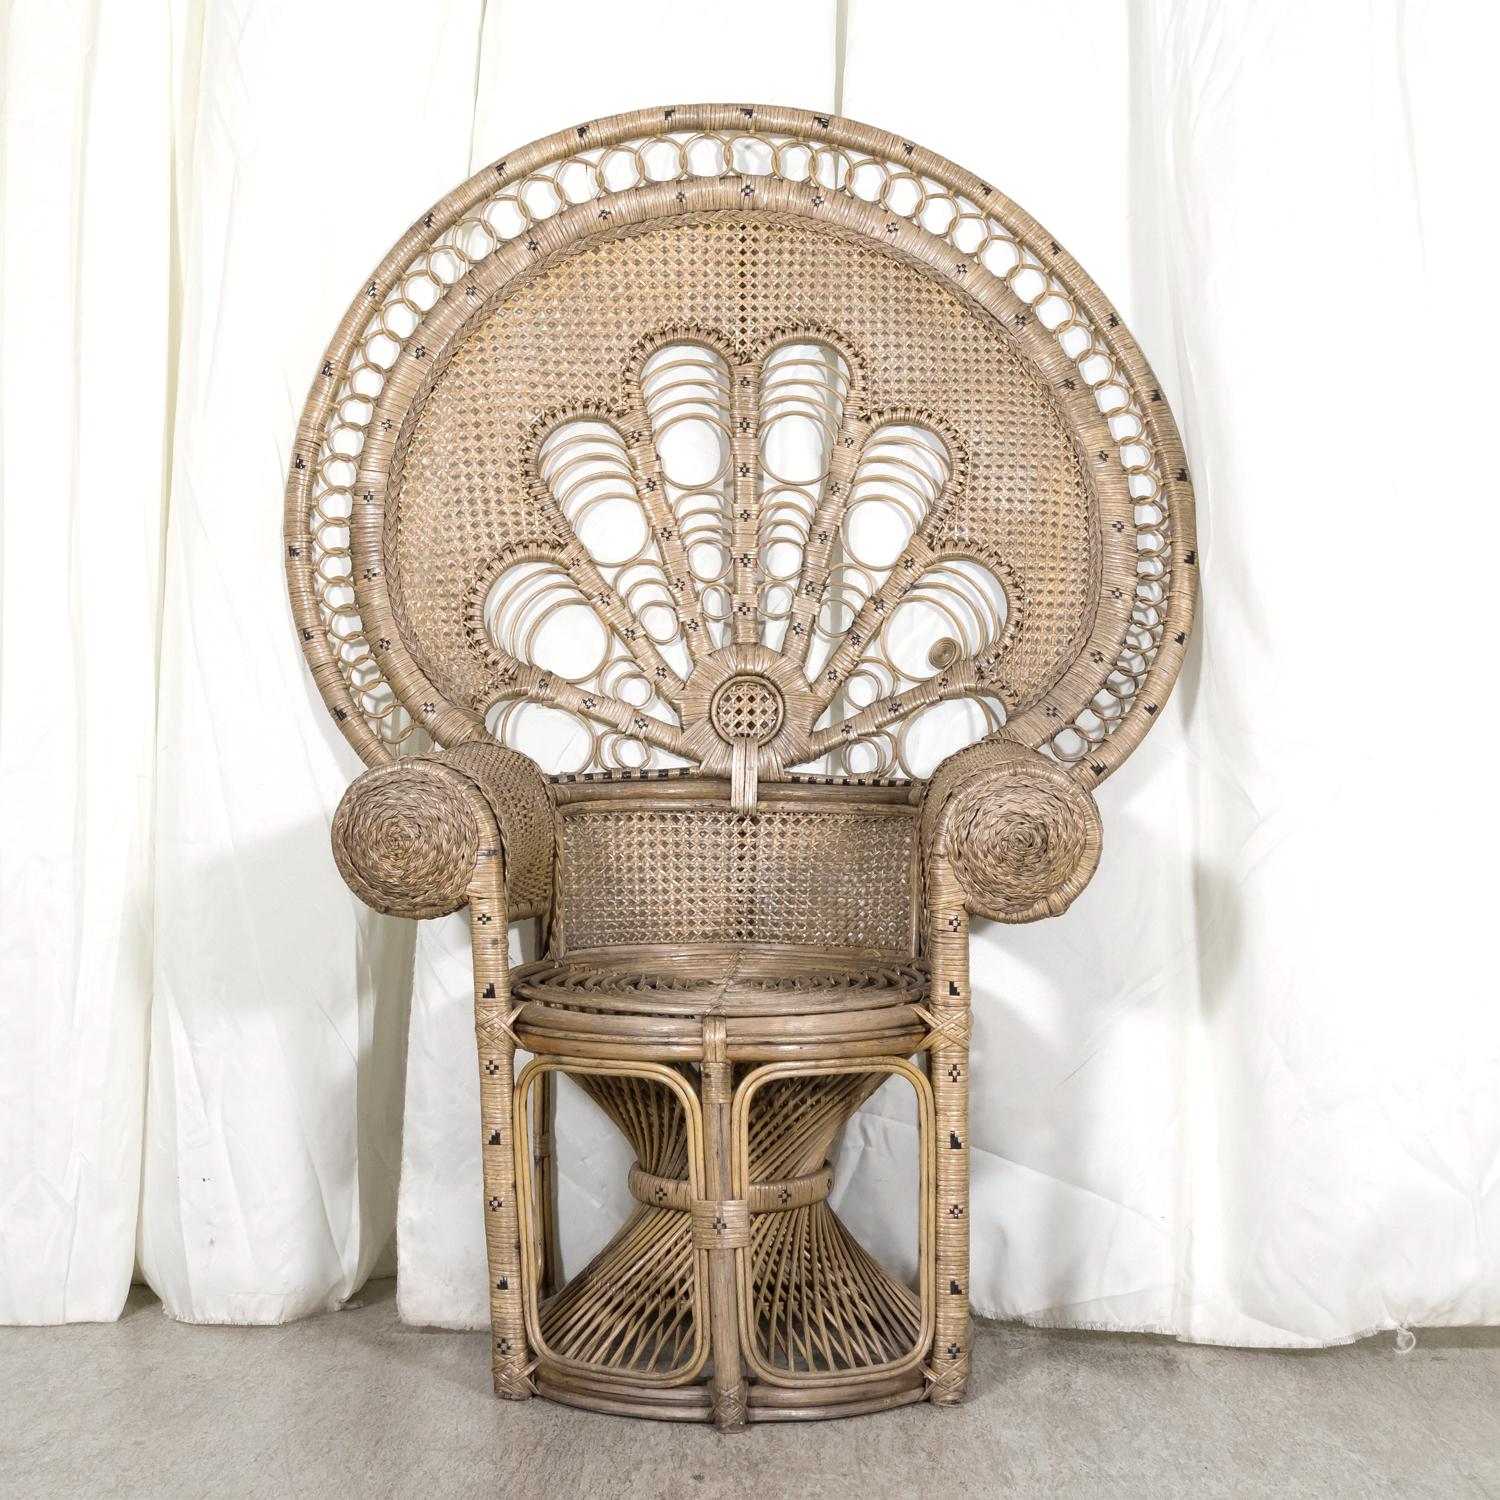 Ein großer, klassischer Peacock-Stuhl aus den 1930er Jahren, handgefertigt in Frankreich aus zweifarbigem Rattan und Korbgeflecht. Dieser seltene Stuhl hat eine extravagant geformte, hoch aufragende Rückenlehne, die den aufgefächerten Federn des